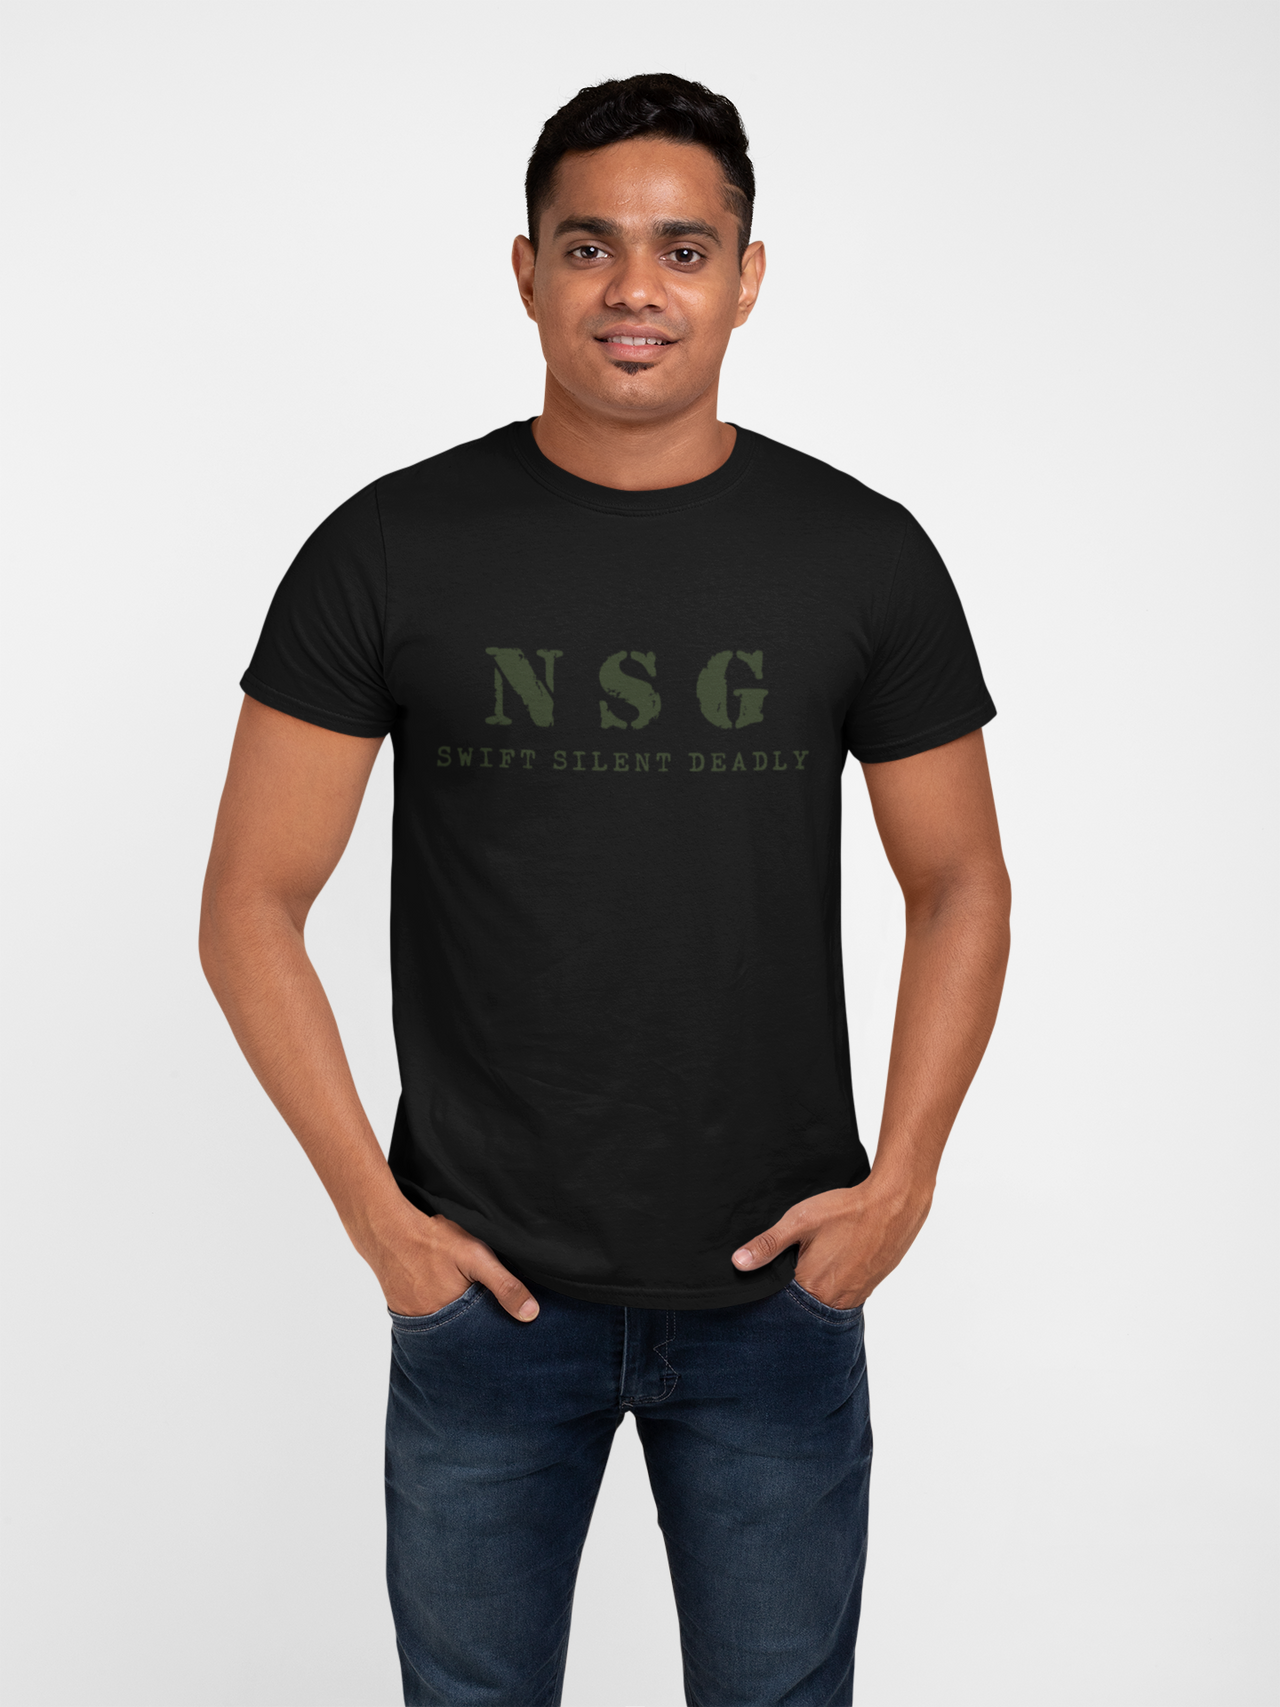 NSG T-shirt - NSG - Swift Silent Deadly (Men)